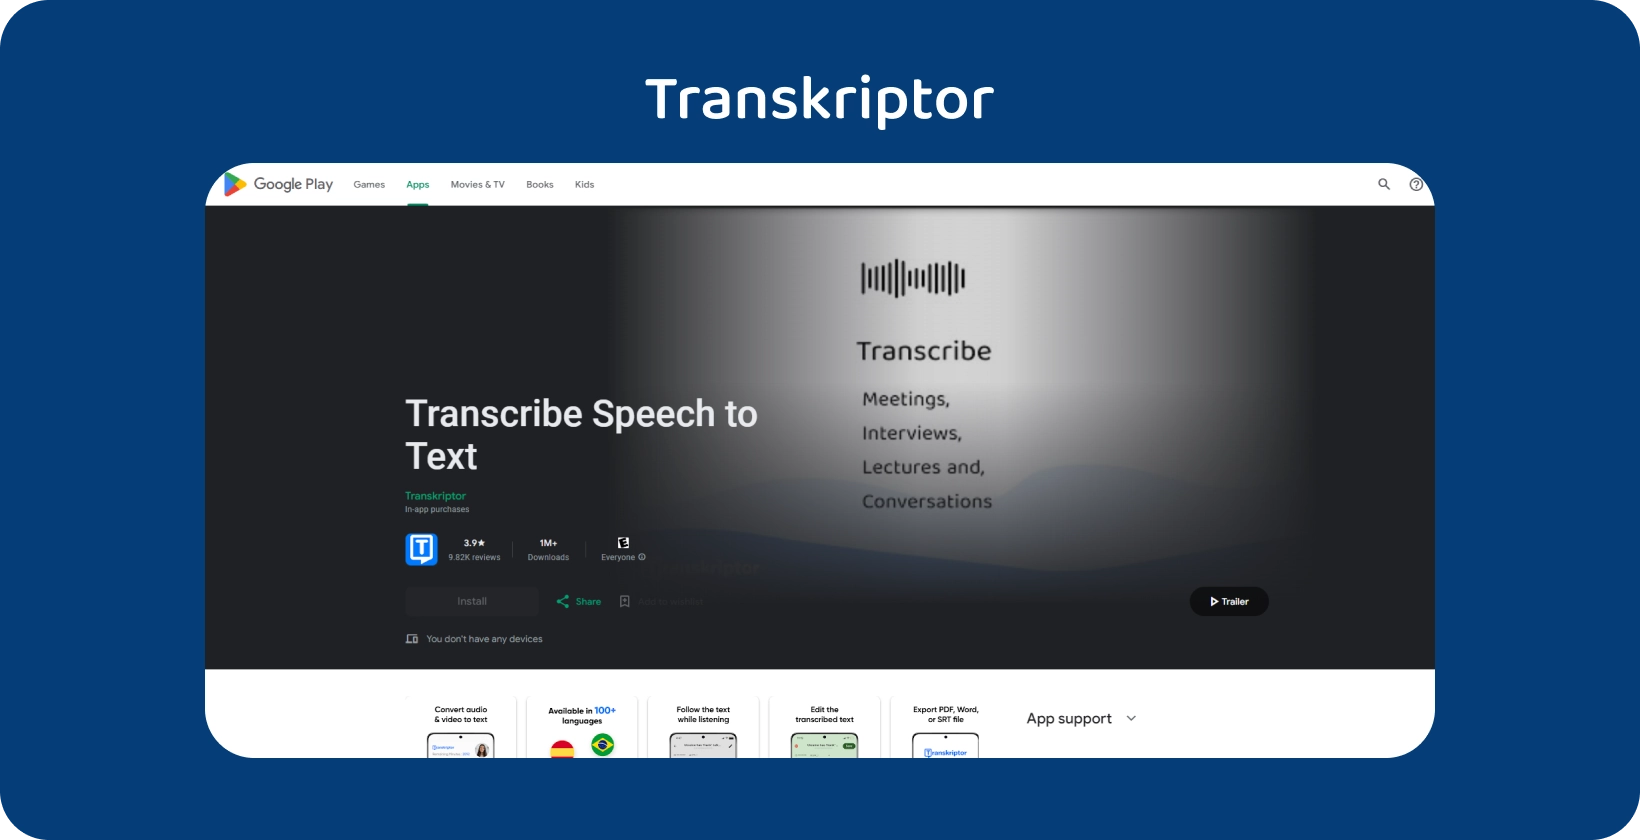 Transkriptor trên Google Play, một ứng dụng để chuyển lời nói thành văn bản, lý tưởng cho các cuộc họp và bài giảng.